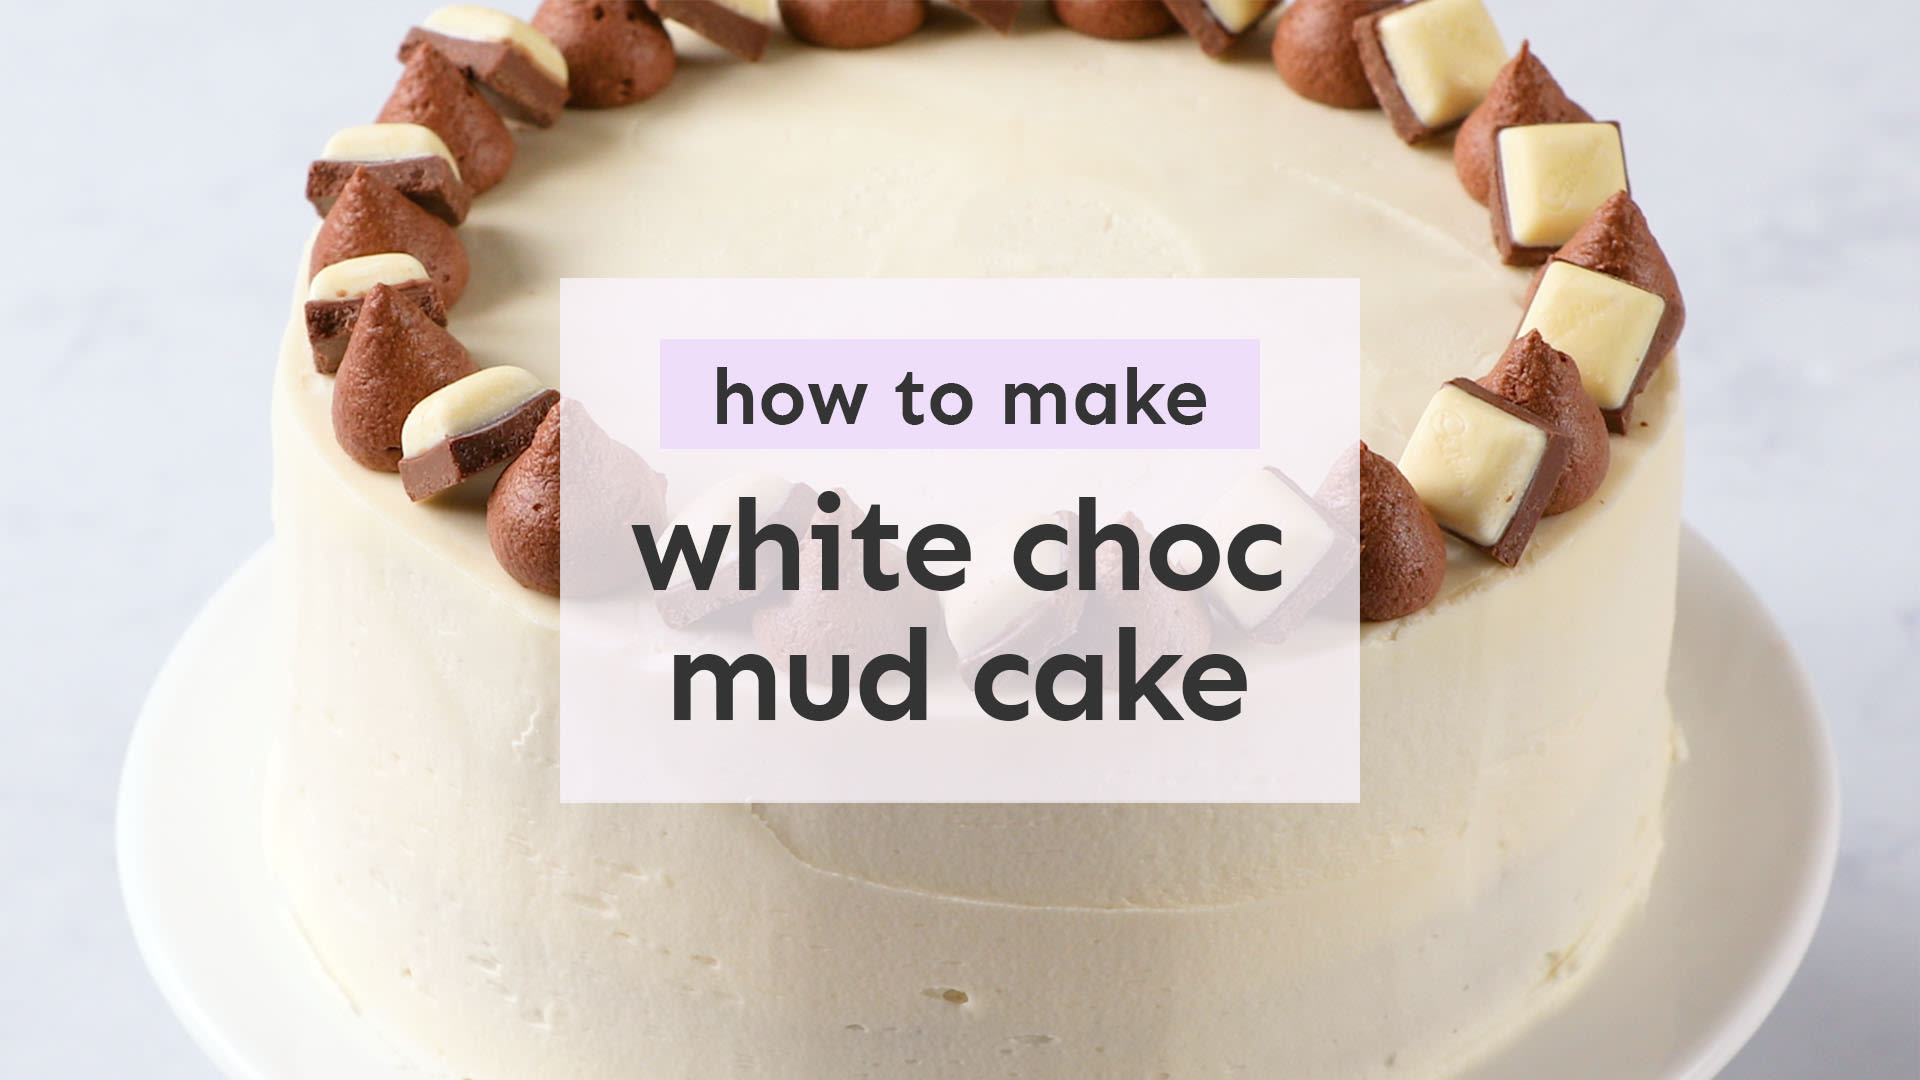 White chocolate mud cake